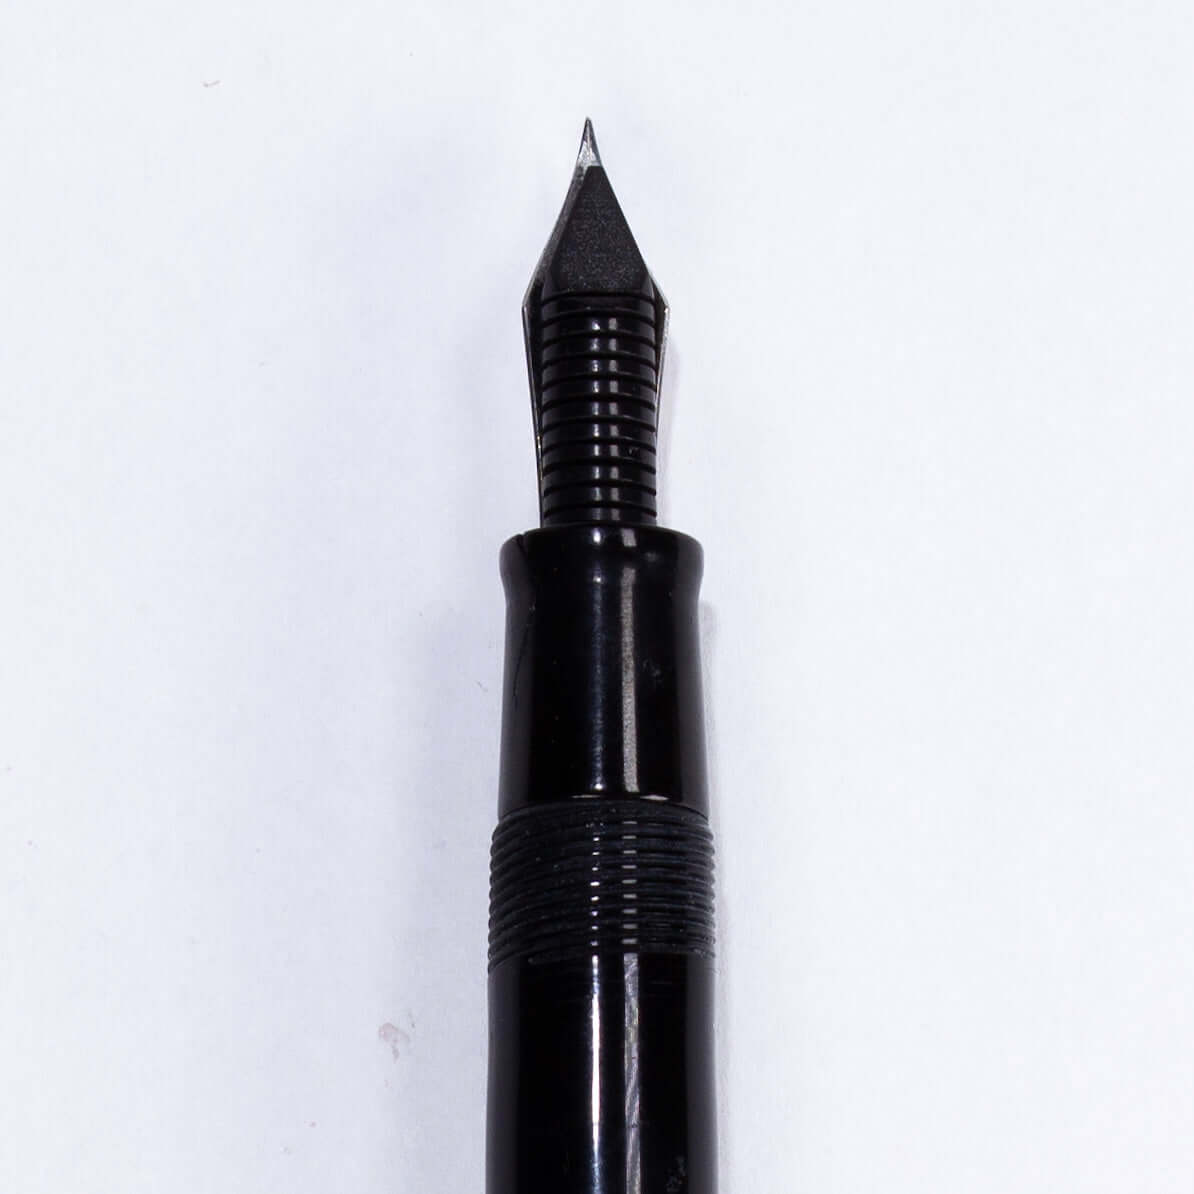 Esterbrook Model SJ Fountain Pen, Black, Restored Lever Filler, #2550 Extra Fine nib, Double Jewel